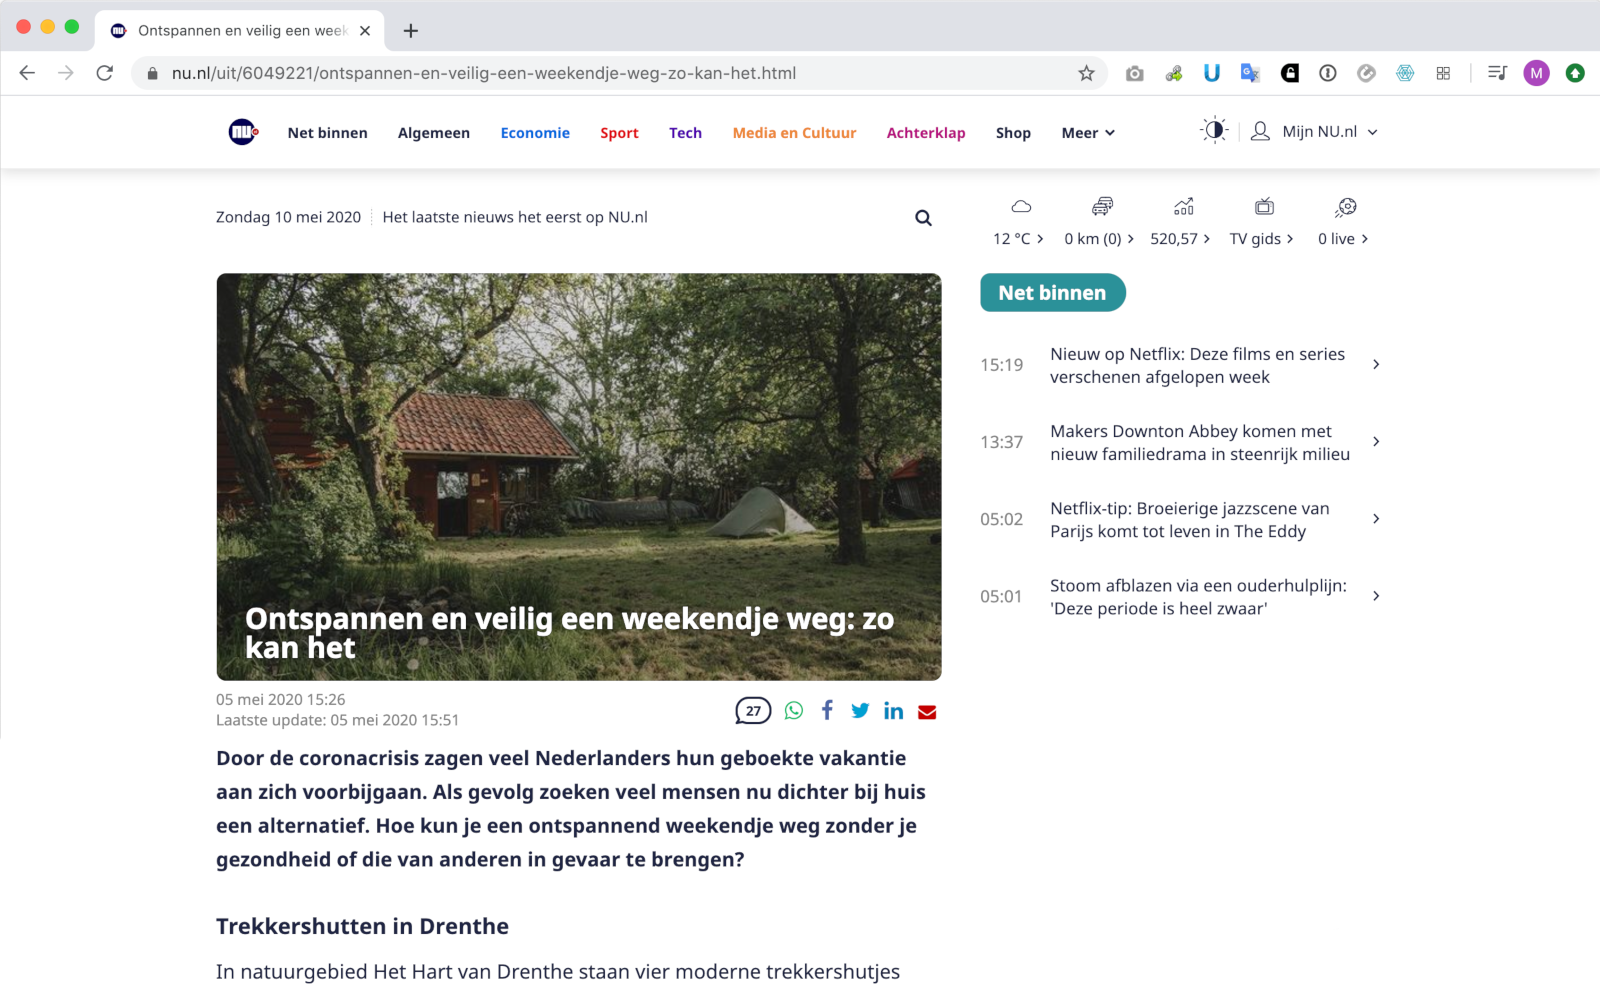 5. Mai 2020 — Nu.nl über sichere Getaways in Zeiten von Corona